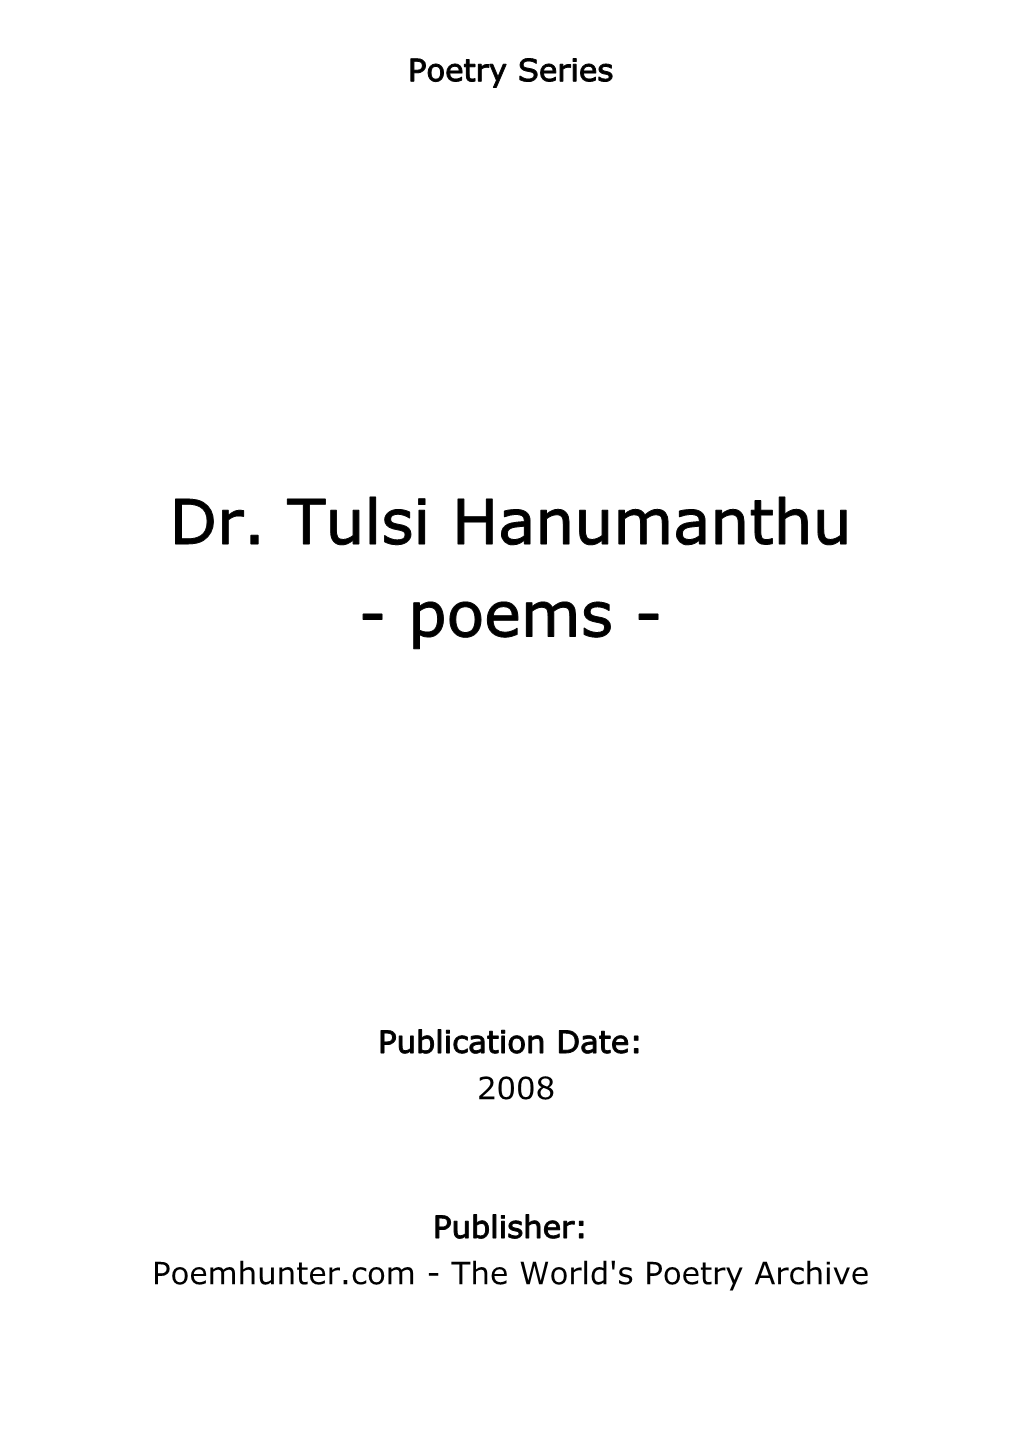 Dr. Tulsi Hanumanthu - Poems